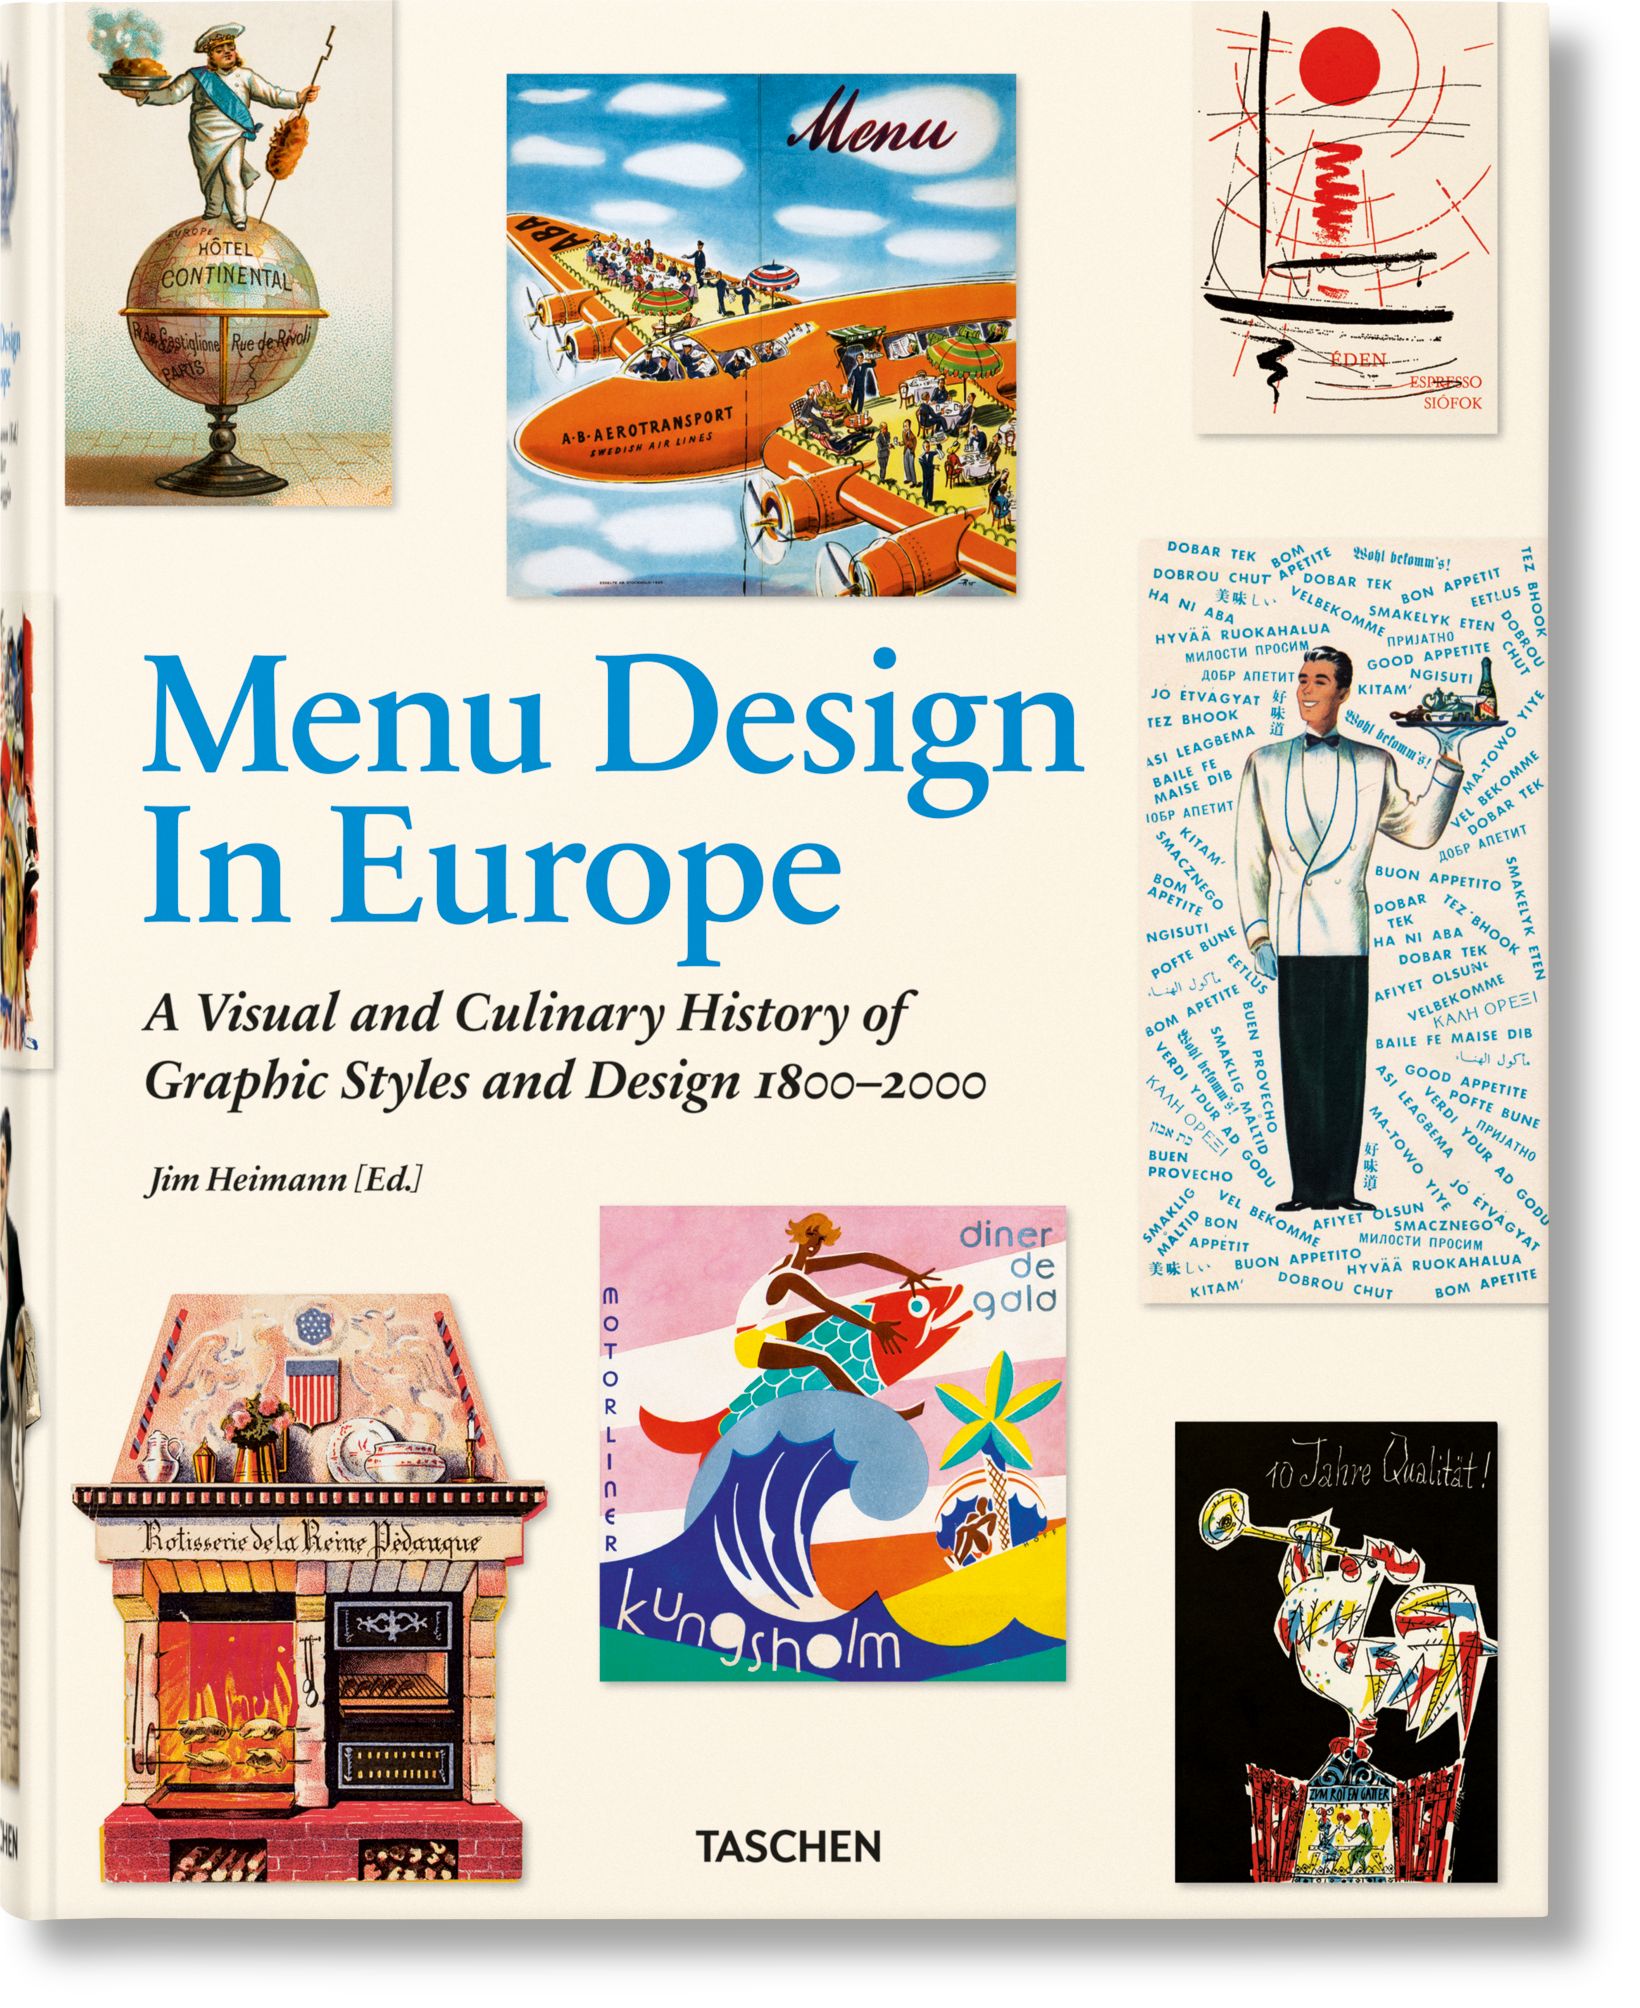 TASCHEN Books: Menu Design in Europe | TASCHEN